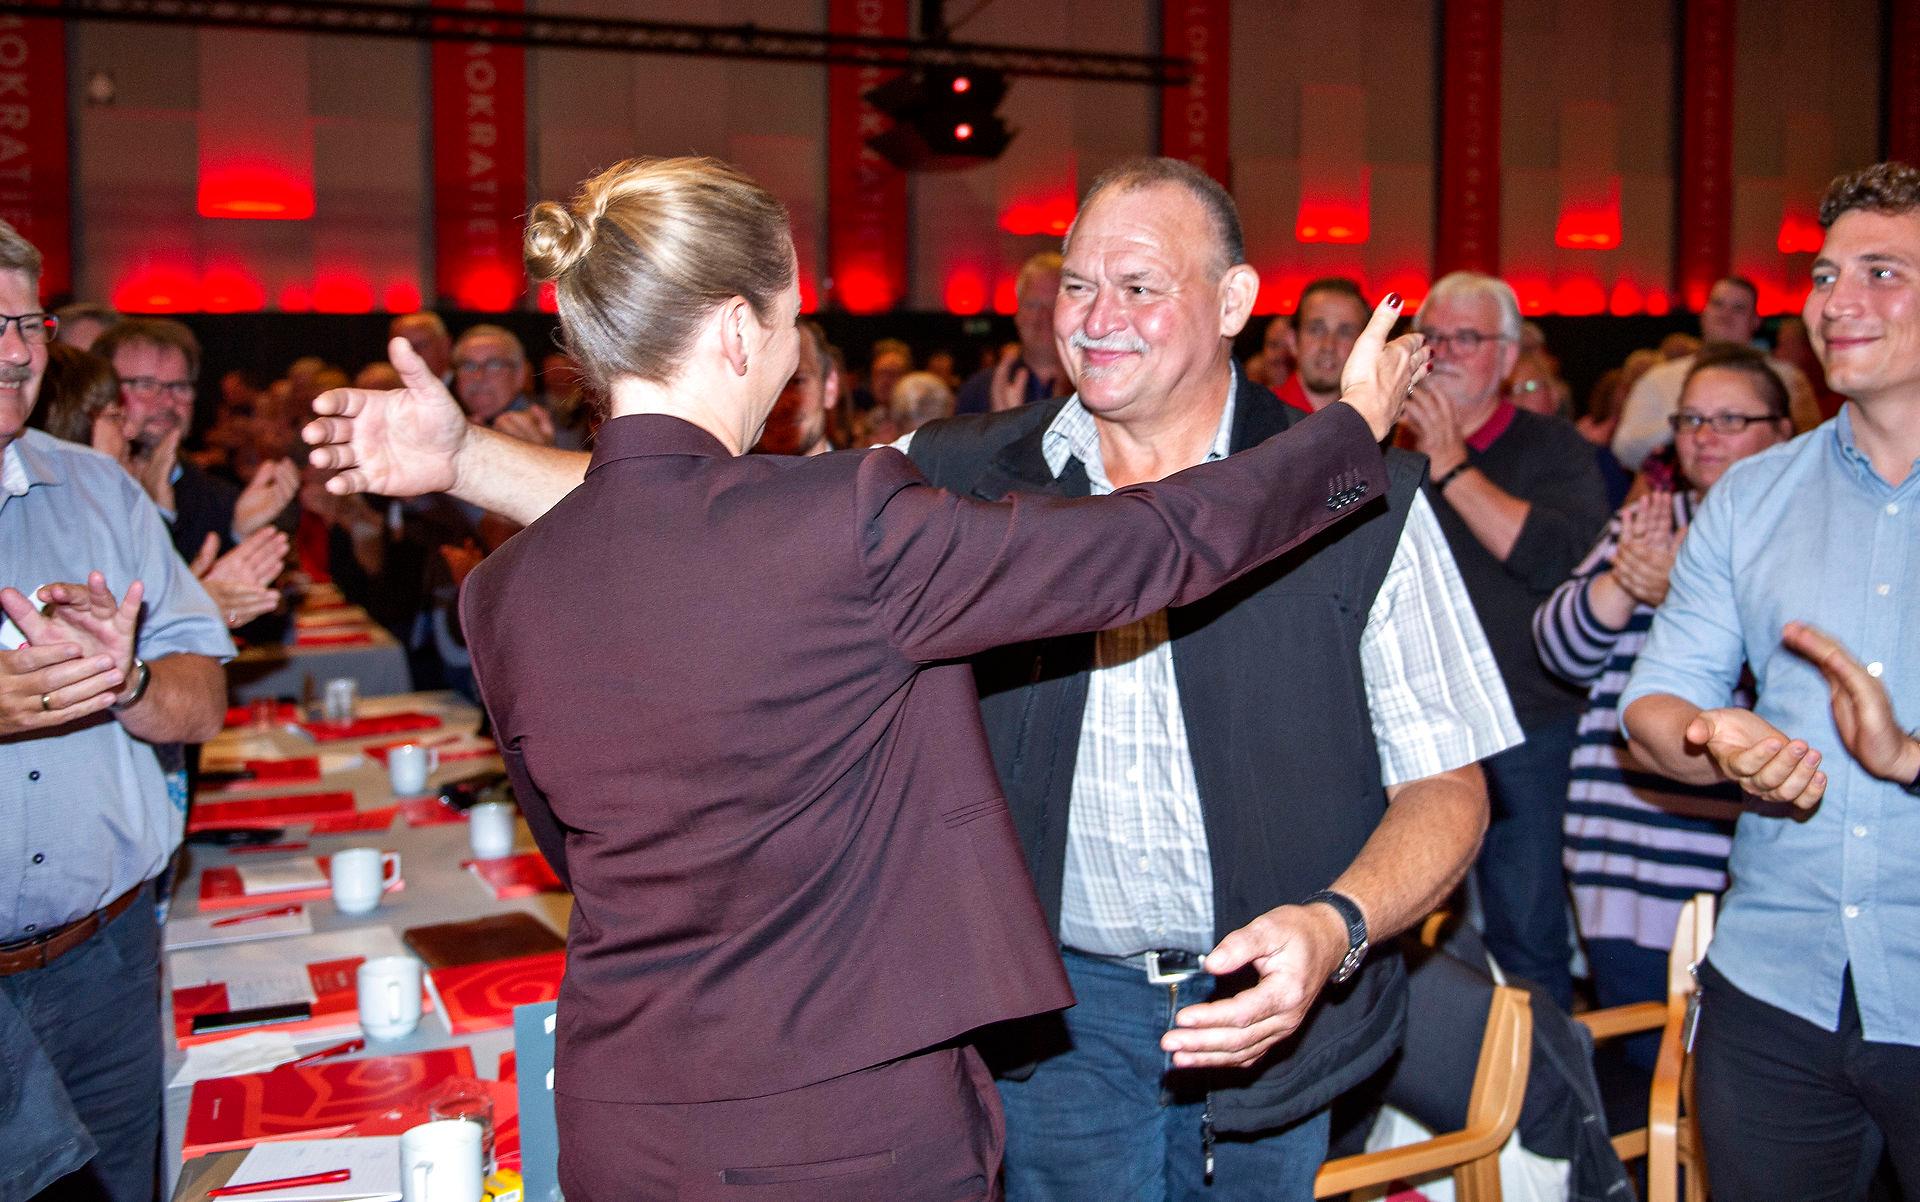 Statsminister Mette Frederiksen (S) hilser på Arne Juhl, der blev ansigtet på kampagnen for Arne-pensionen, efter sin tale ved Socialdemokratiets kongres i 2019.